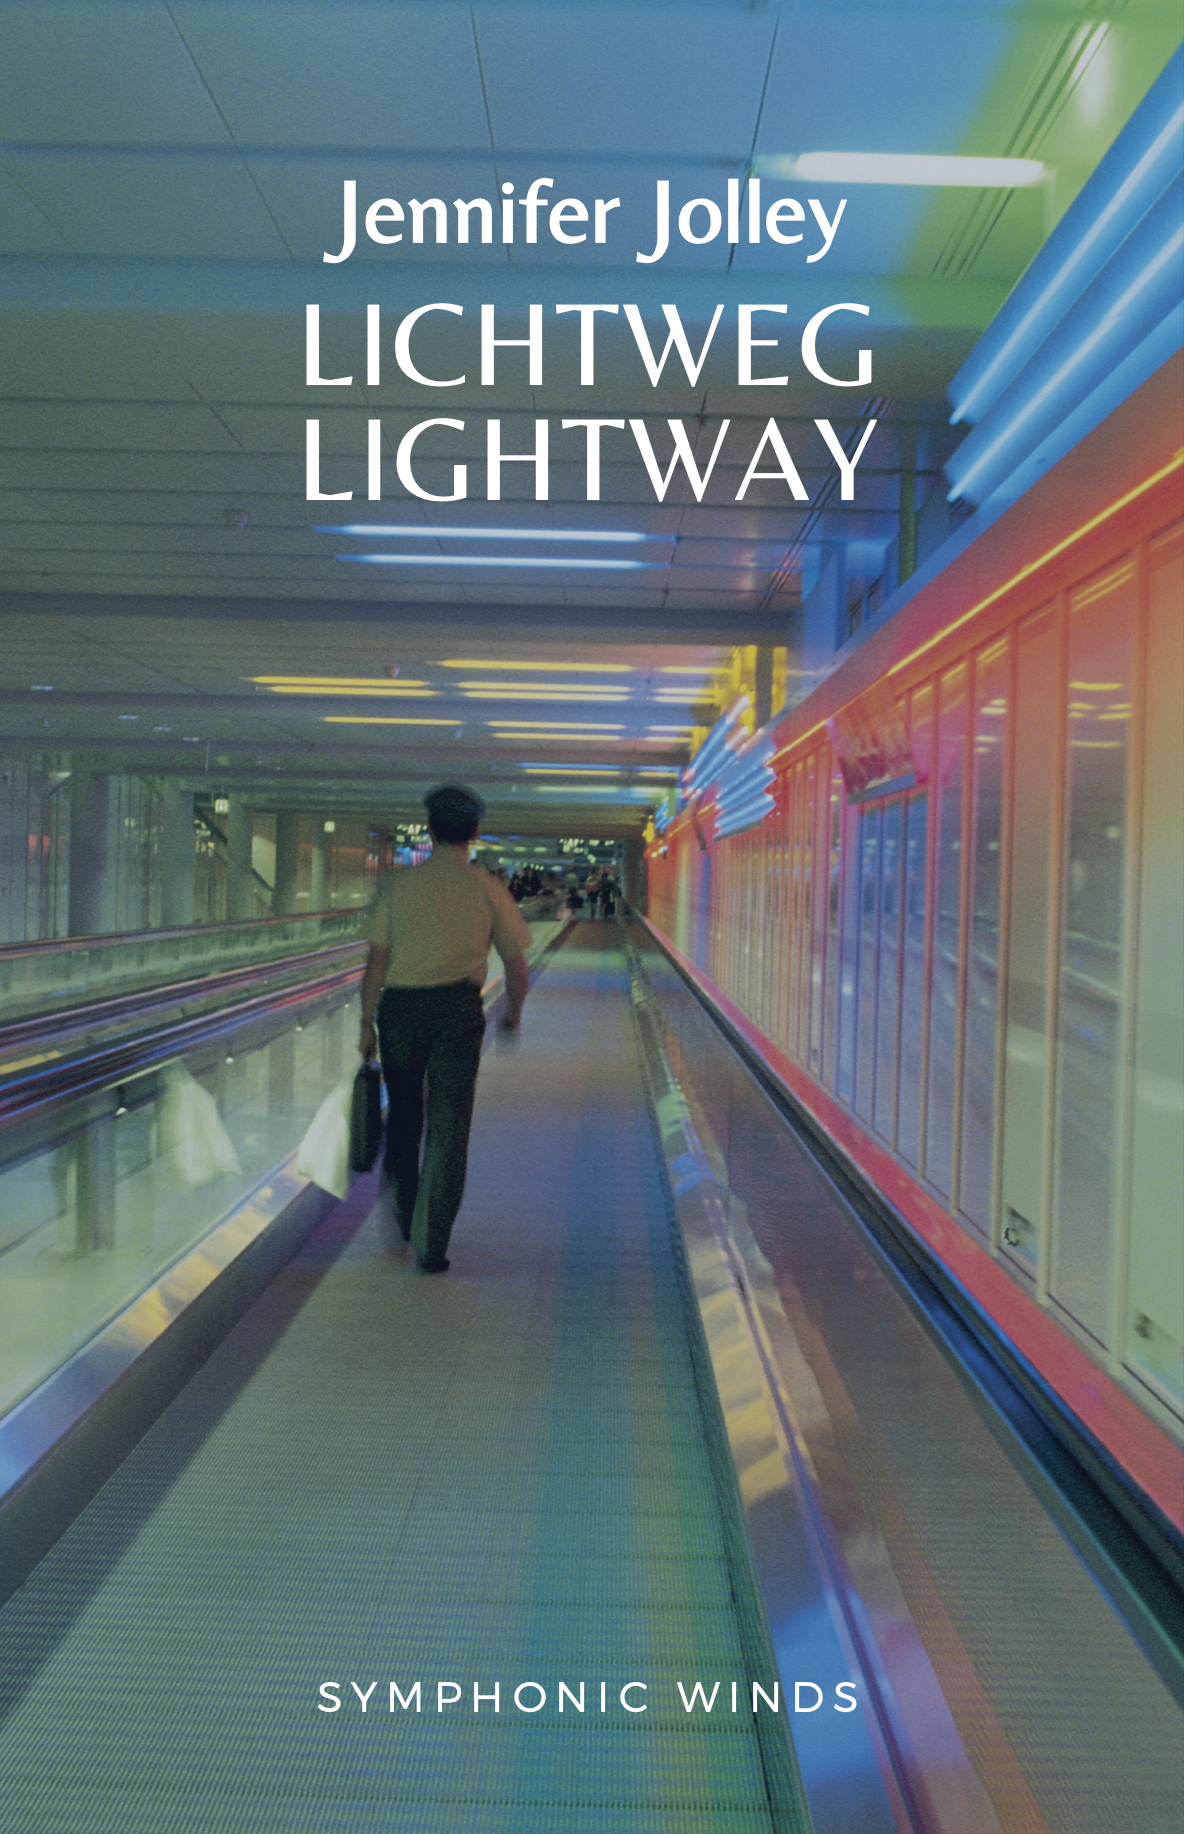 Lichtweg/Lightway (Score Only) by Jennifer Jolley